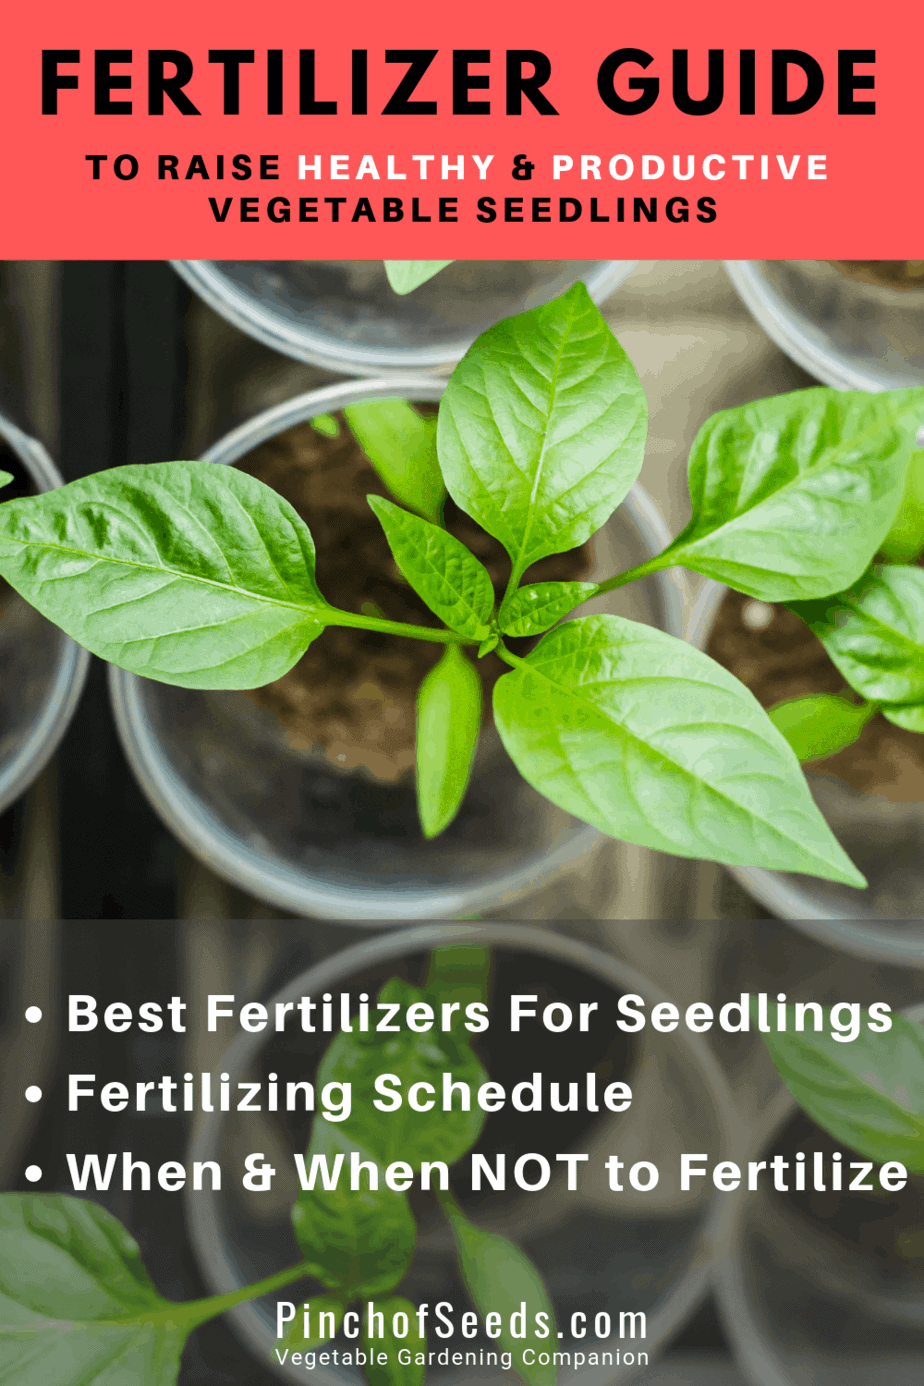 Seedling Fertilizers When How 3 Best Fertilizers